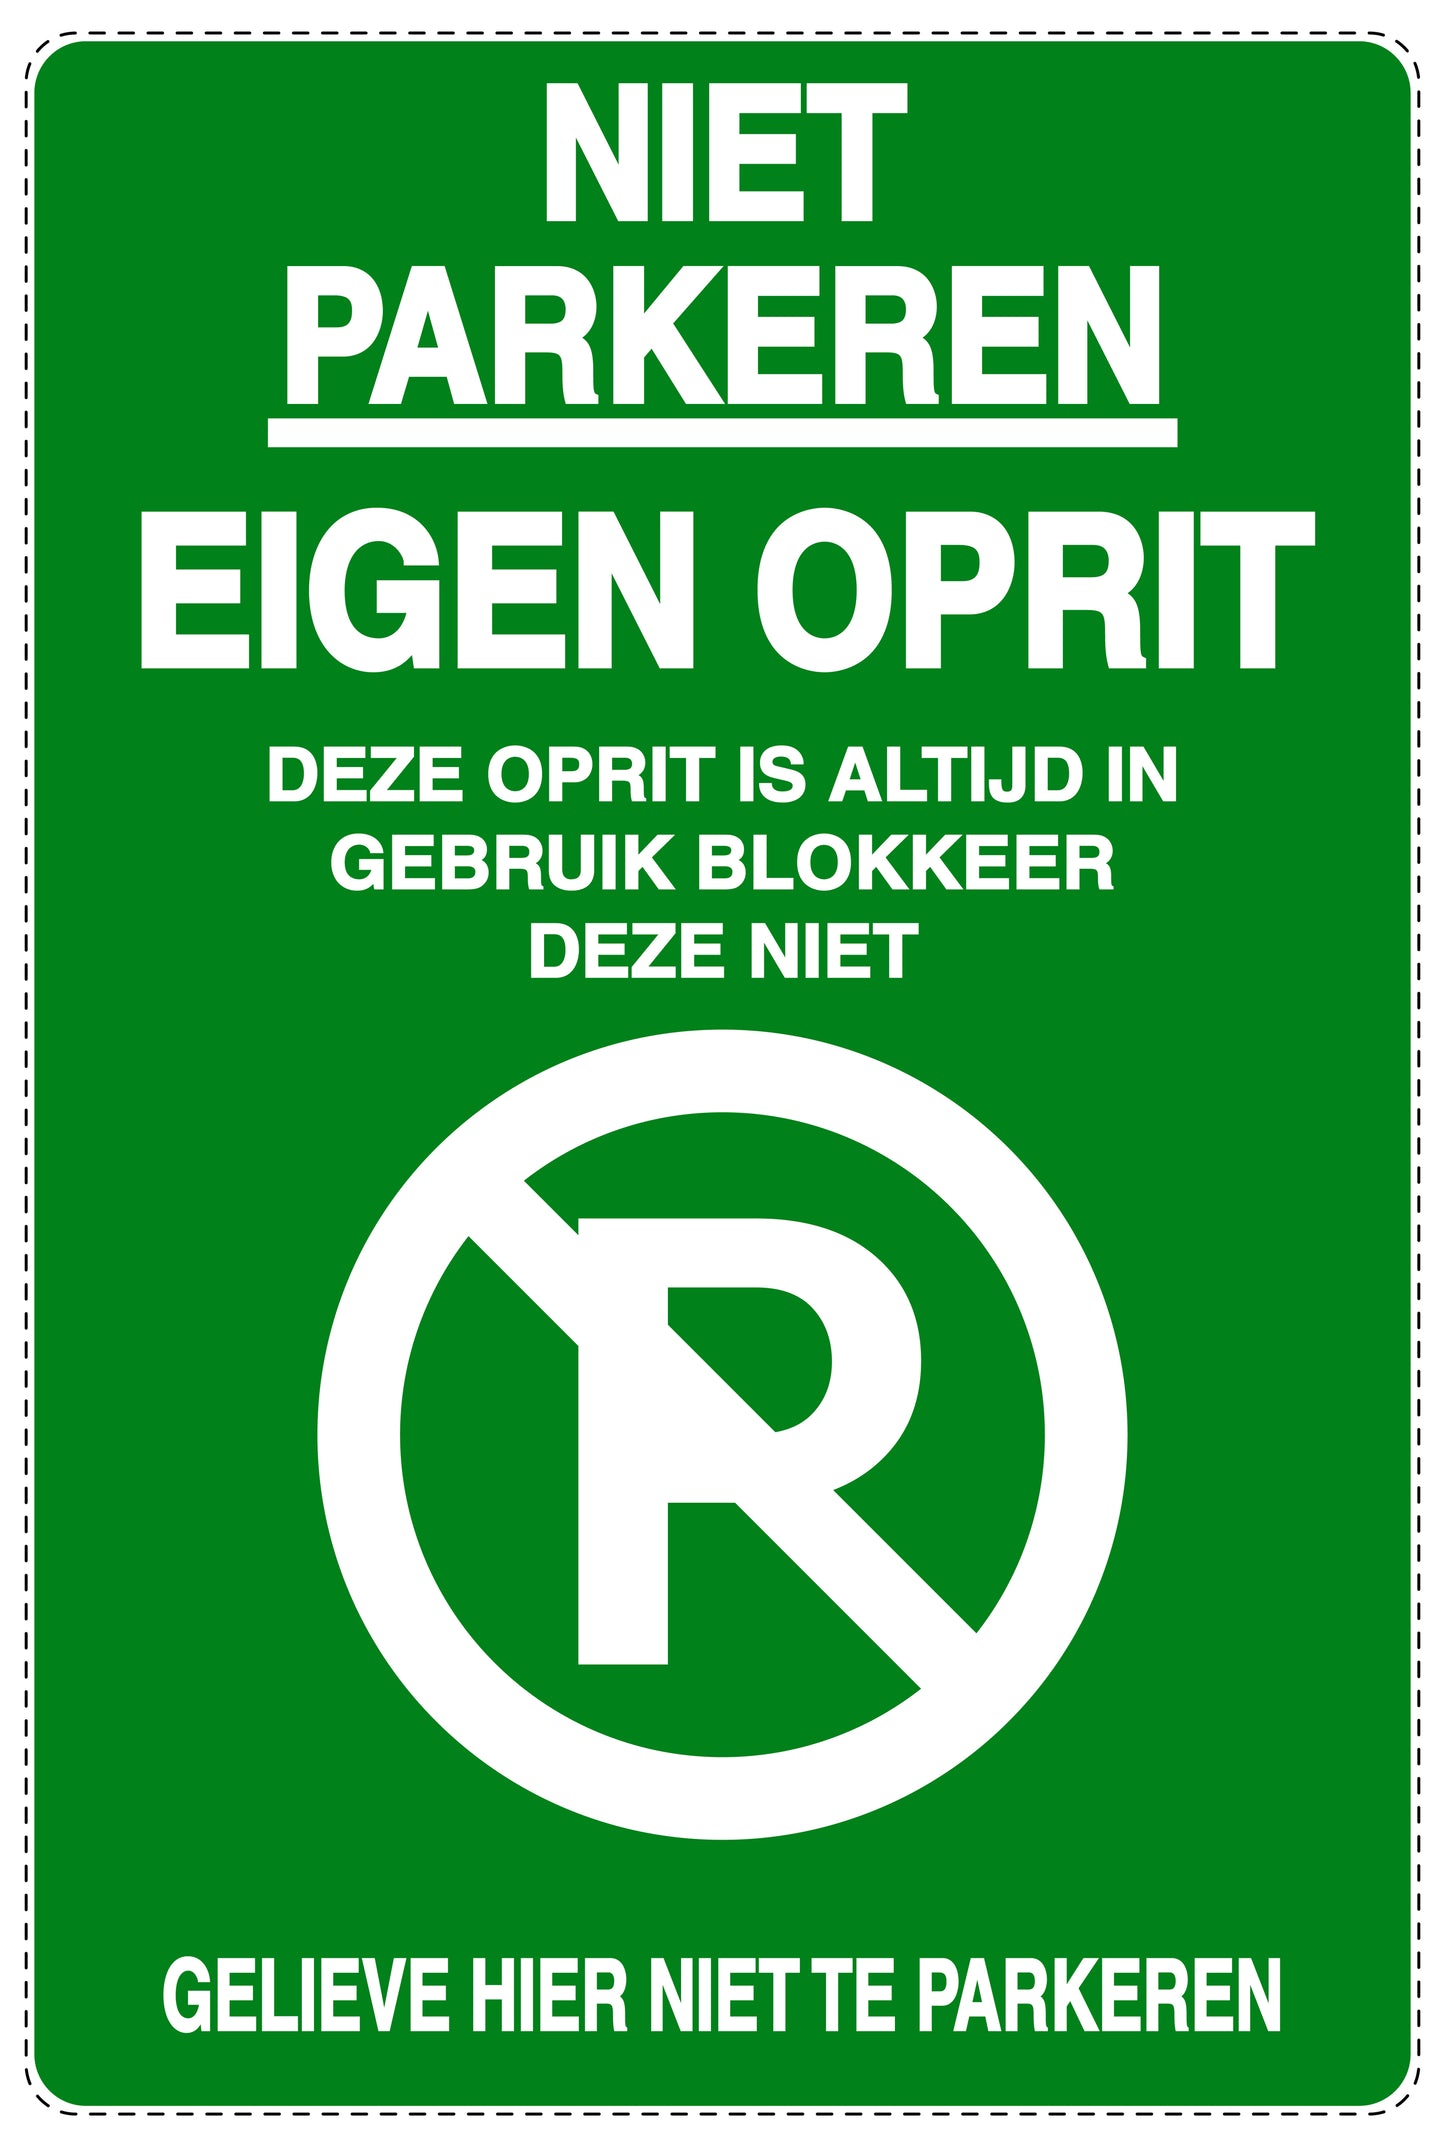 Niet parkeren Sticker "Niet parkeren eigen oprit deze oprit is altijd in gebruik blokkeer deze niet gelieve hier niet te parkeren" EW-NPRK-2100-54